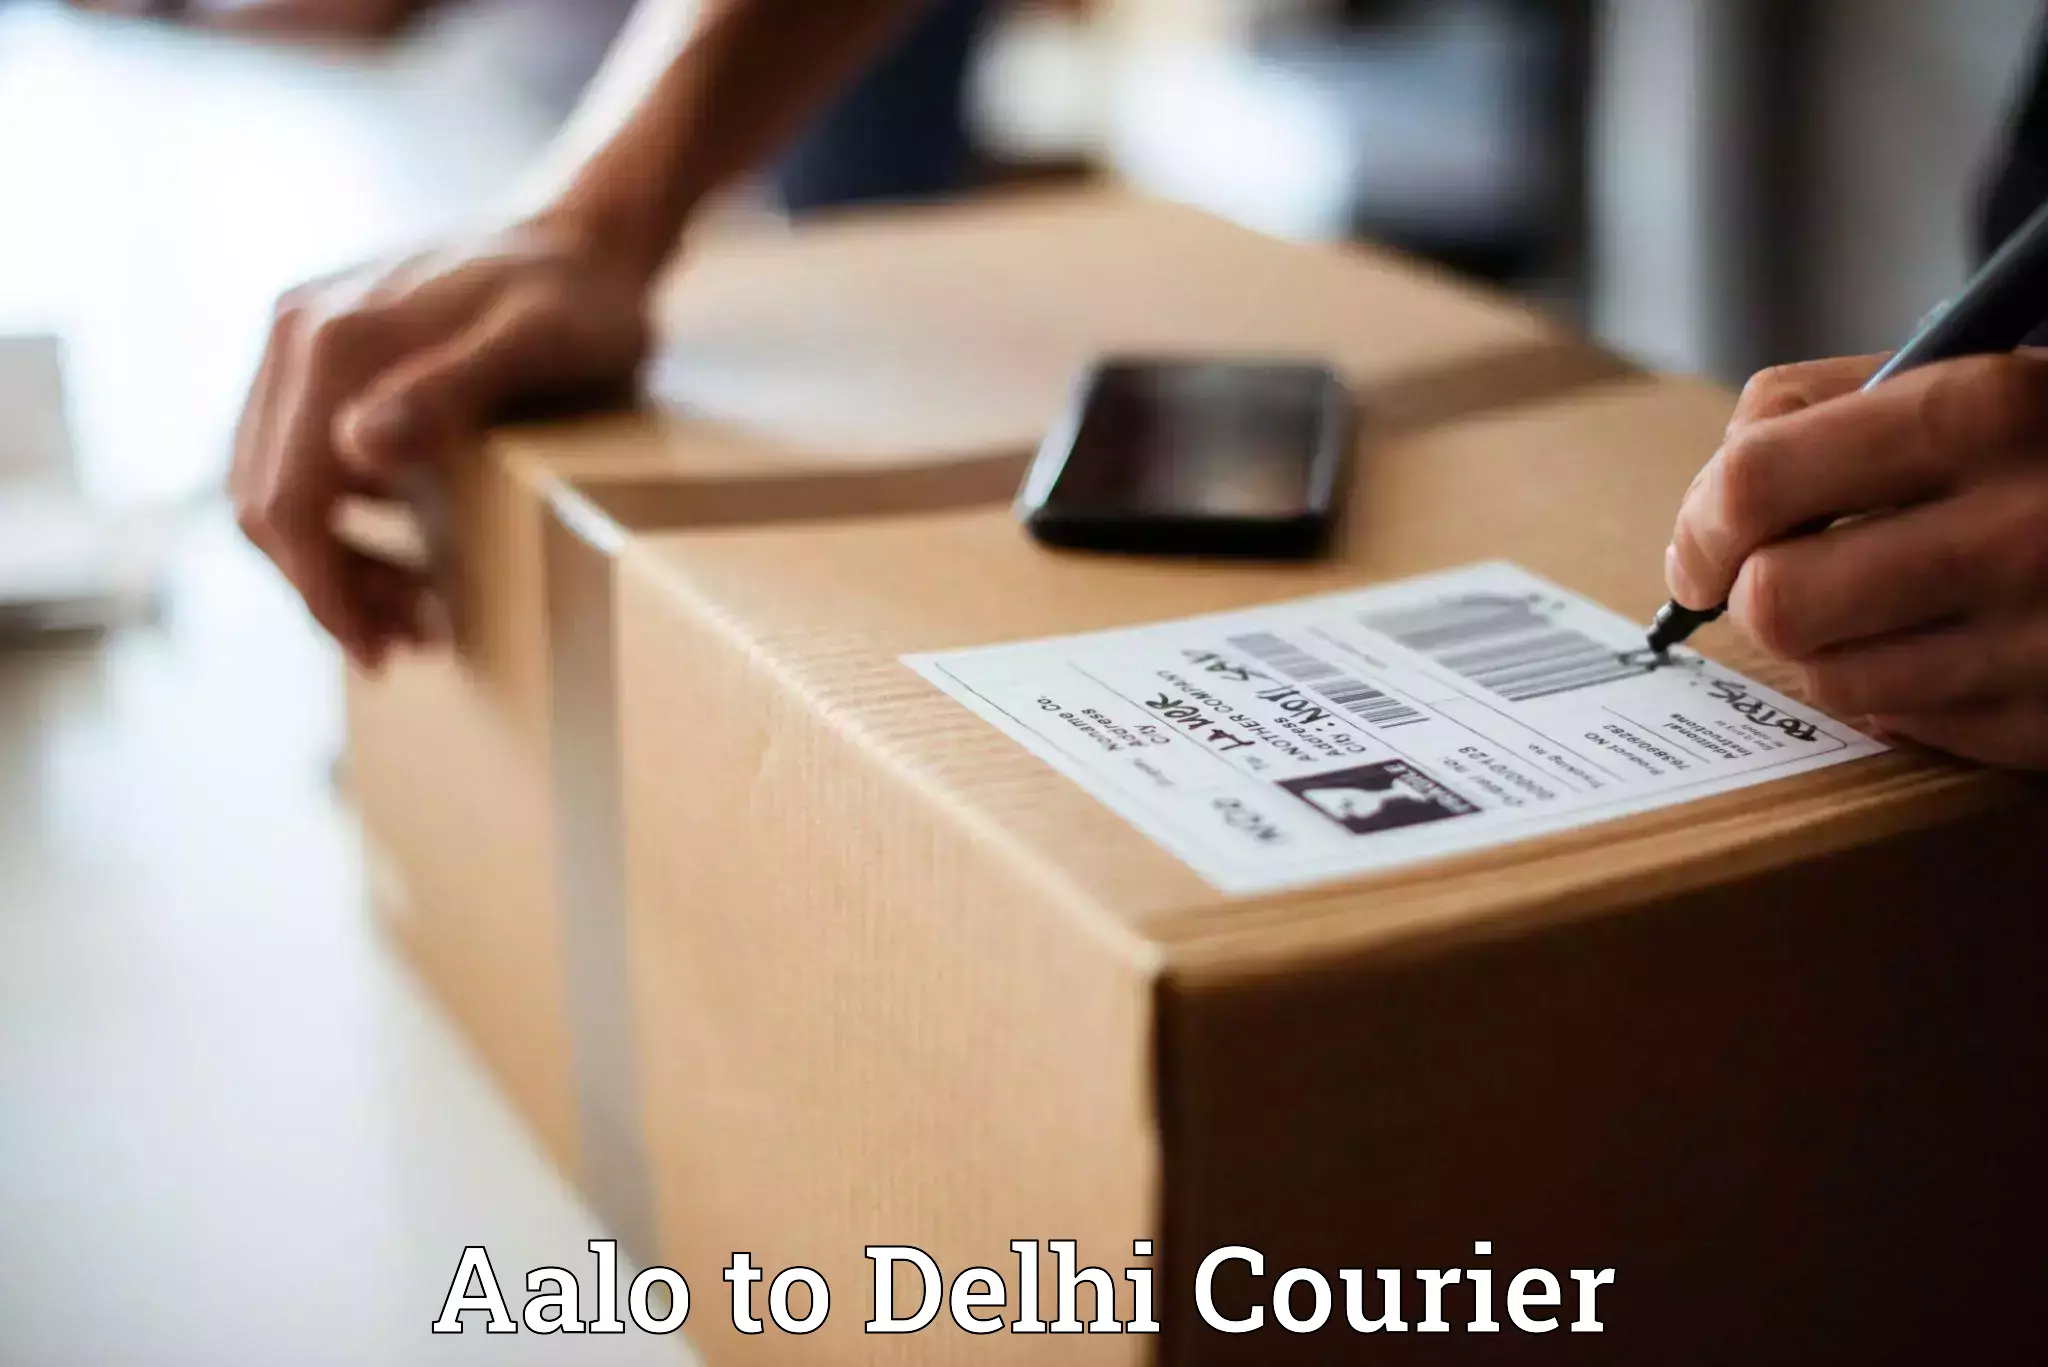 Efficient parcel delivery Aalo to Delhi